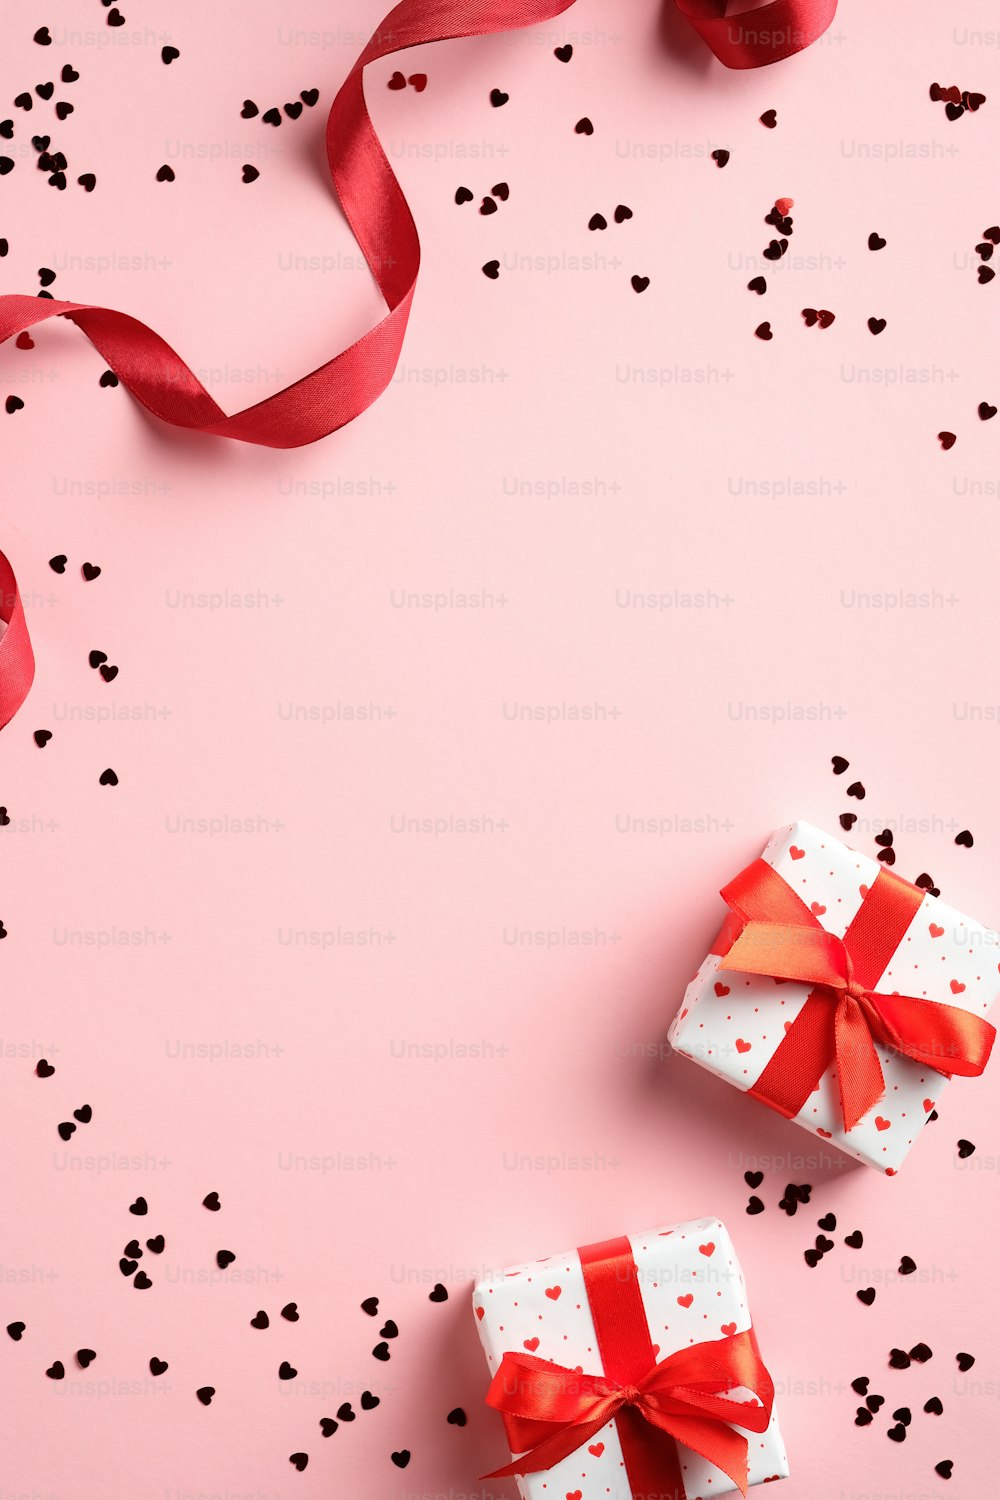 Plantilla de tarjeta de San Valentín con regalos, cinta roja, confeti sobre fondo rosa. Plano plano, vista superior, espacio de copia.